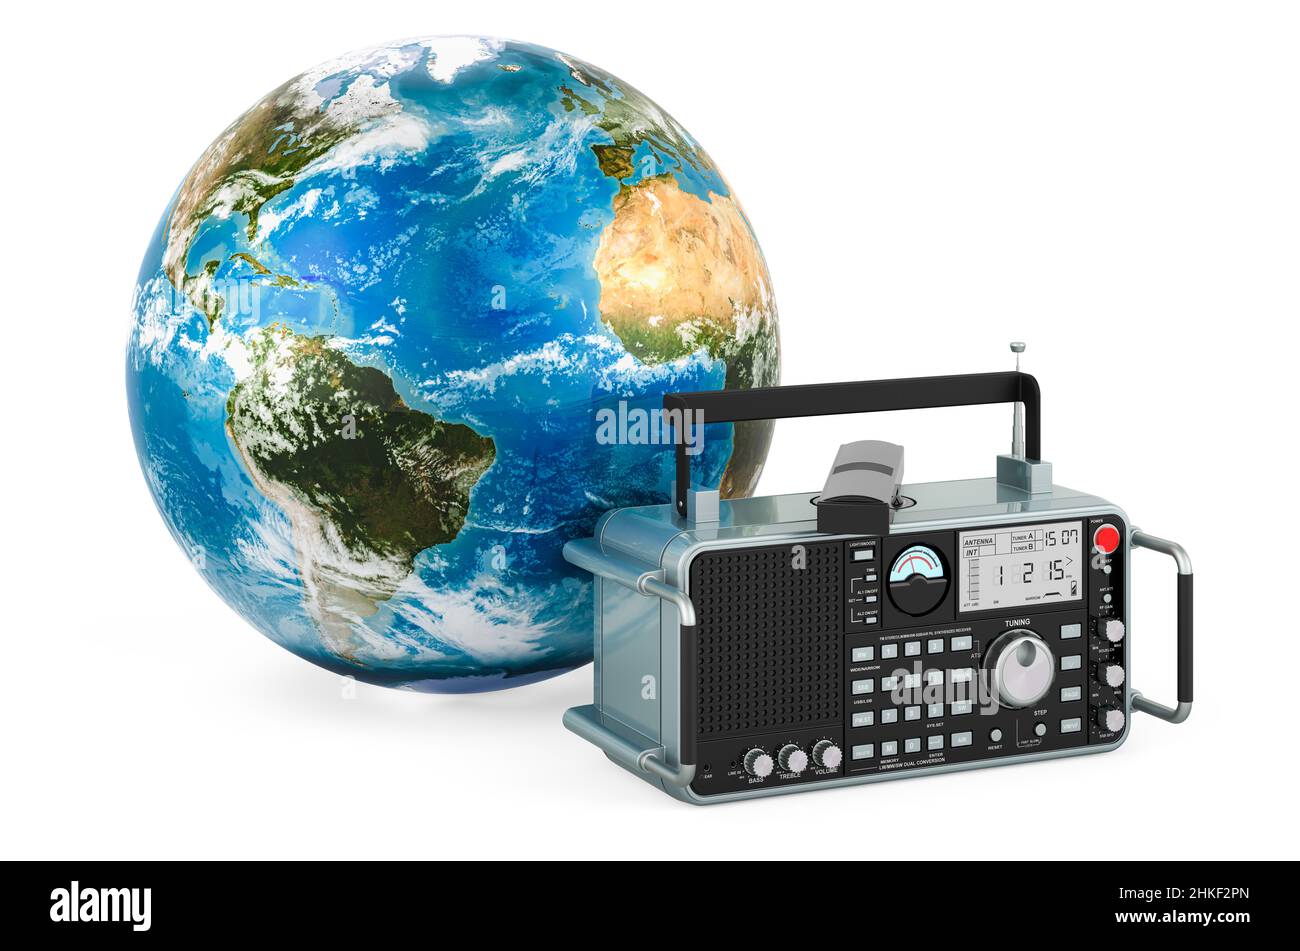 Radio digitale con Earth Globe. Giornata mondiale della radio, concetto. 3D rendering isolato su sfondo bianco Foto Stock